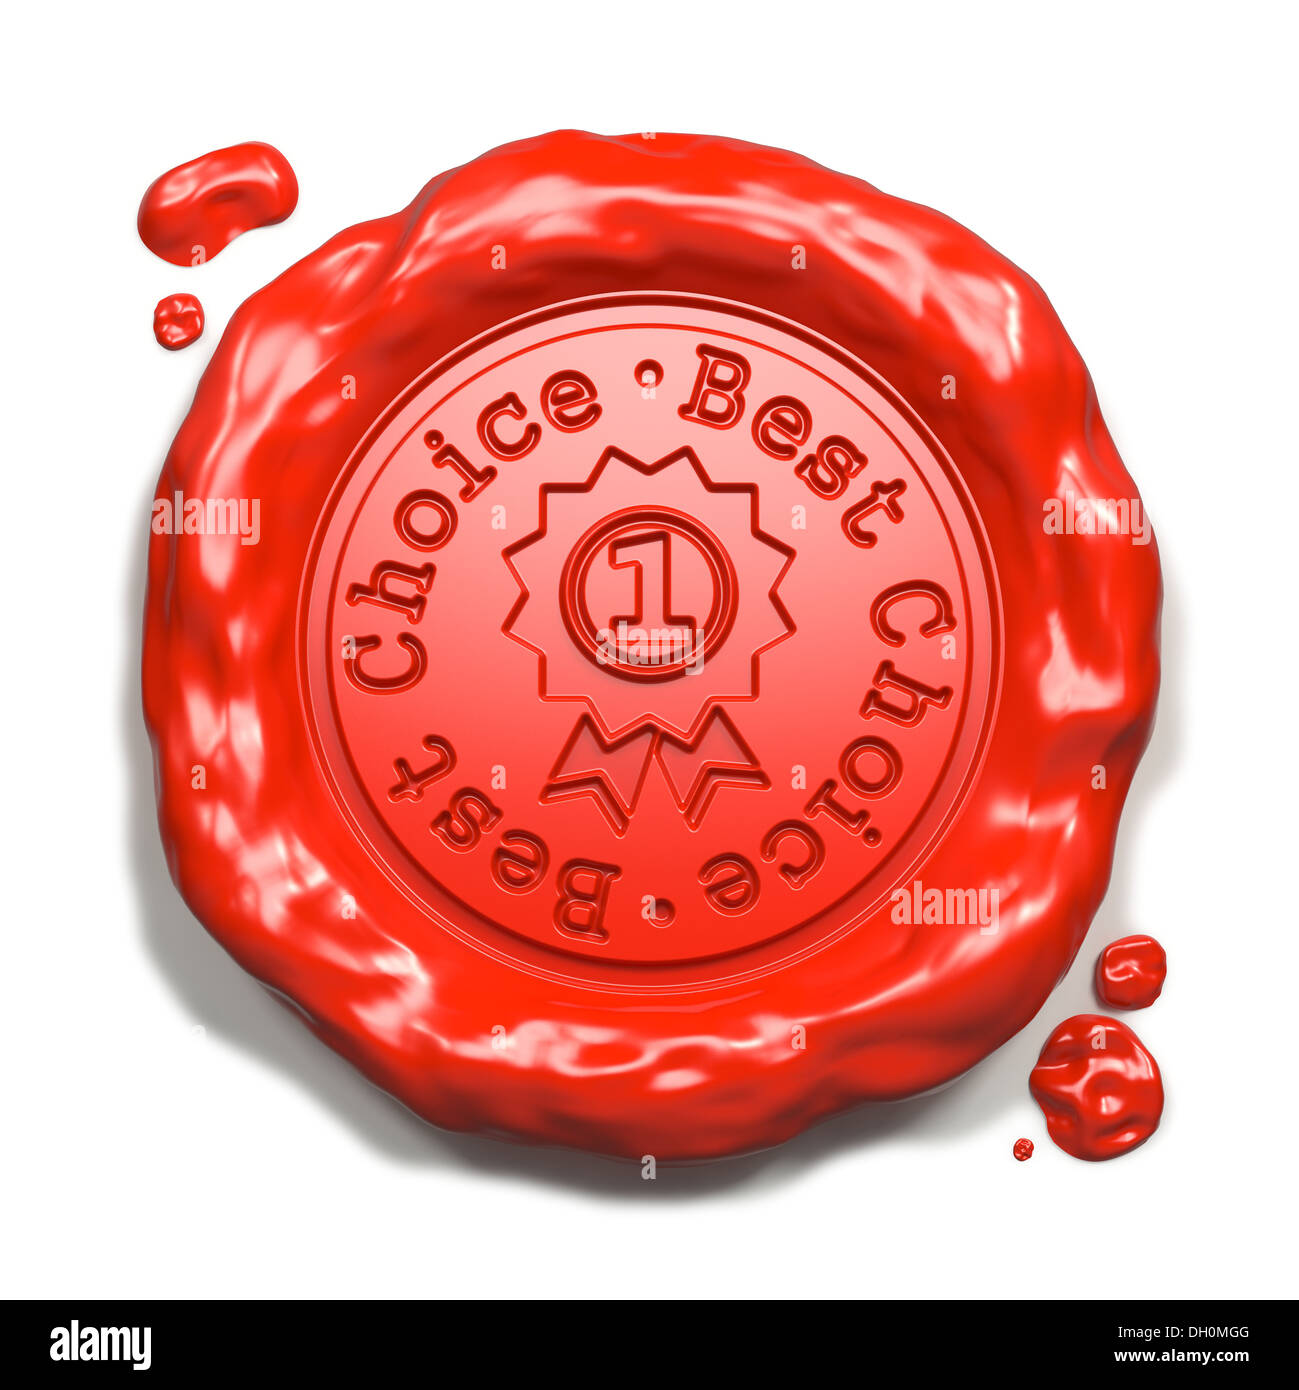 Beste Wahl - Stempel auf Siegel aus rotem Wachs. Stockfoto